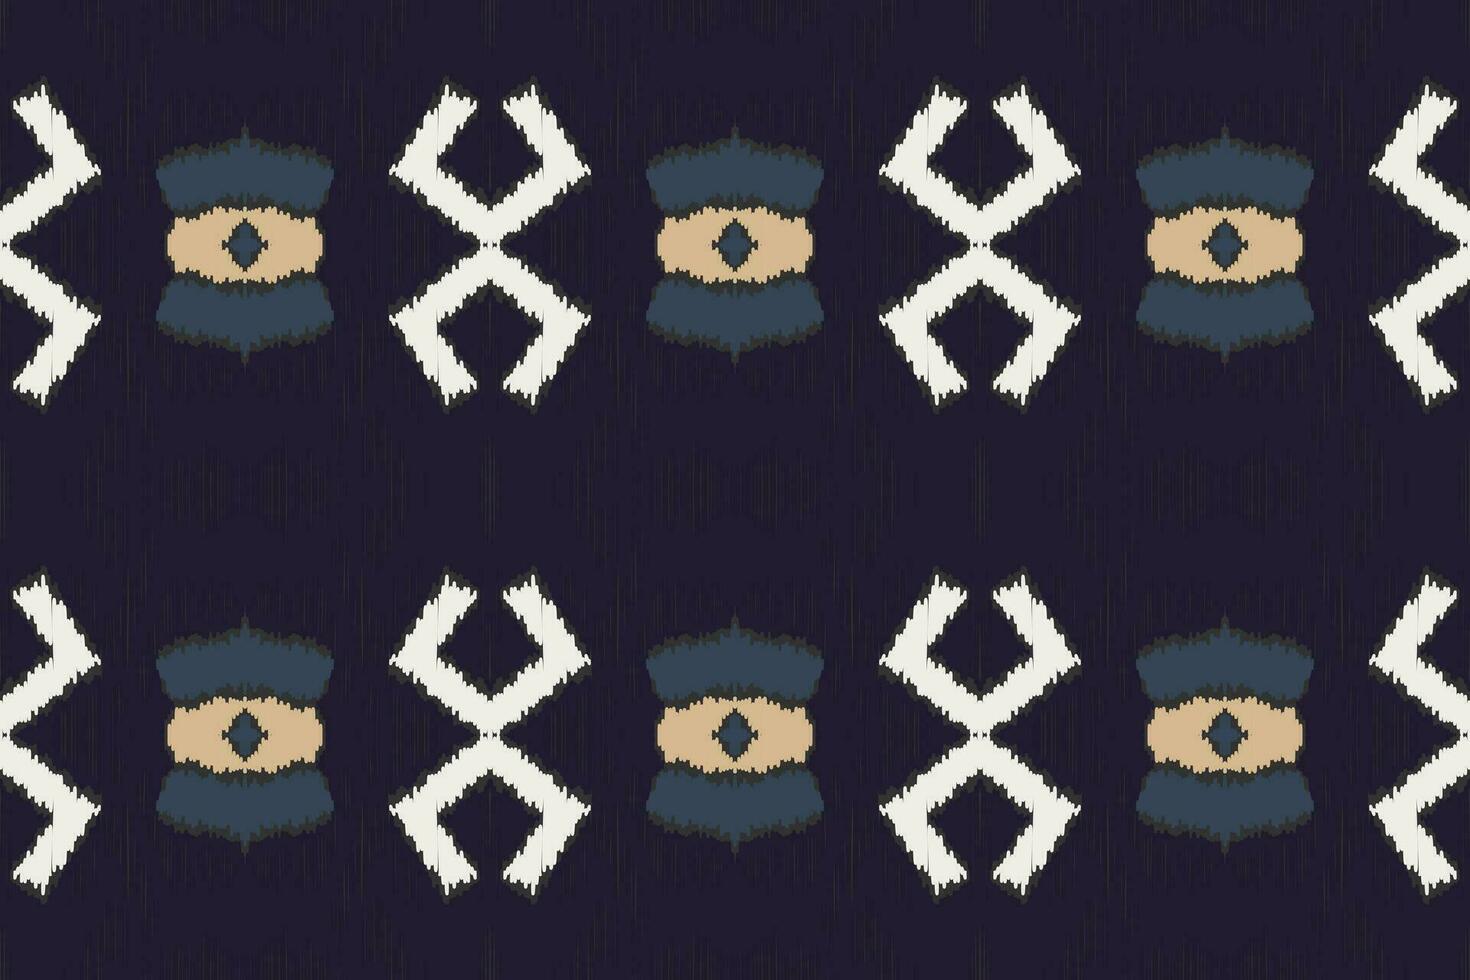 motiv ikat blommig paisley broderi bakgrund. ikat mönster geometrisk etnisk orientalisk mönster traditionell.aztec stil abstrakt vektor design för textur, tyg, kläder, inslagning, sarong.